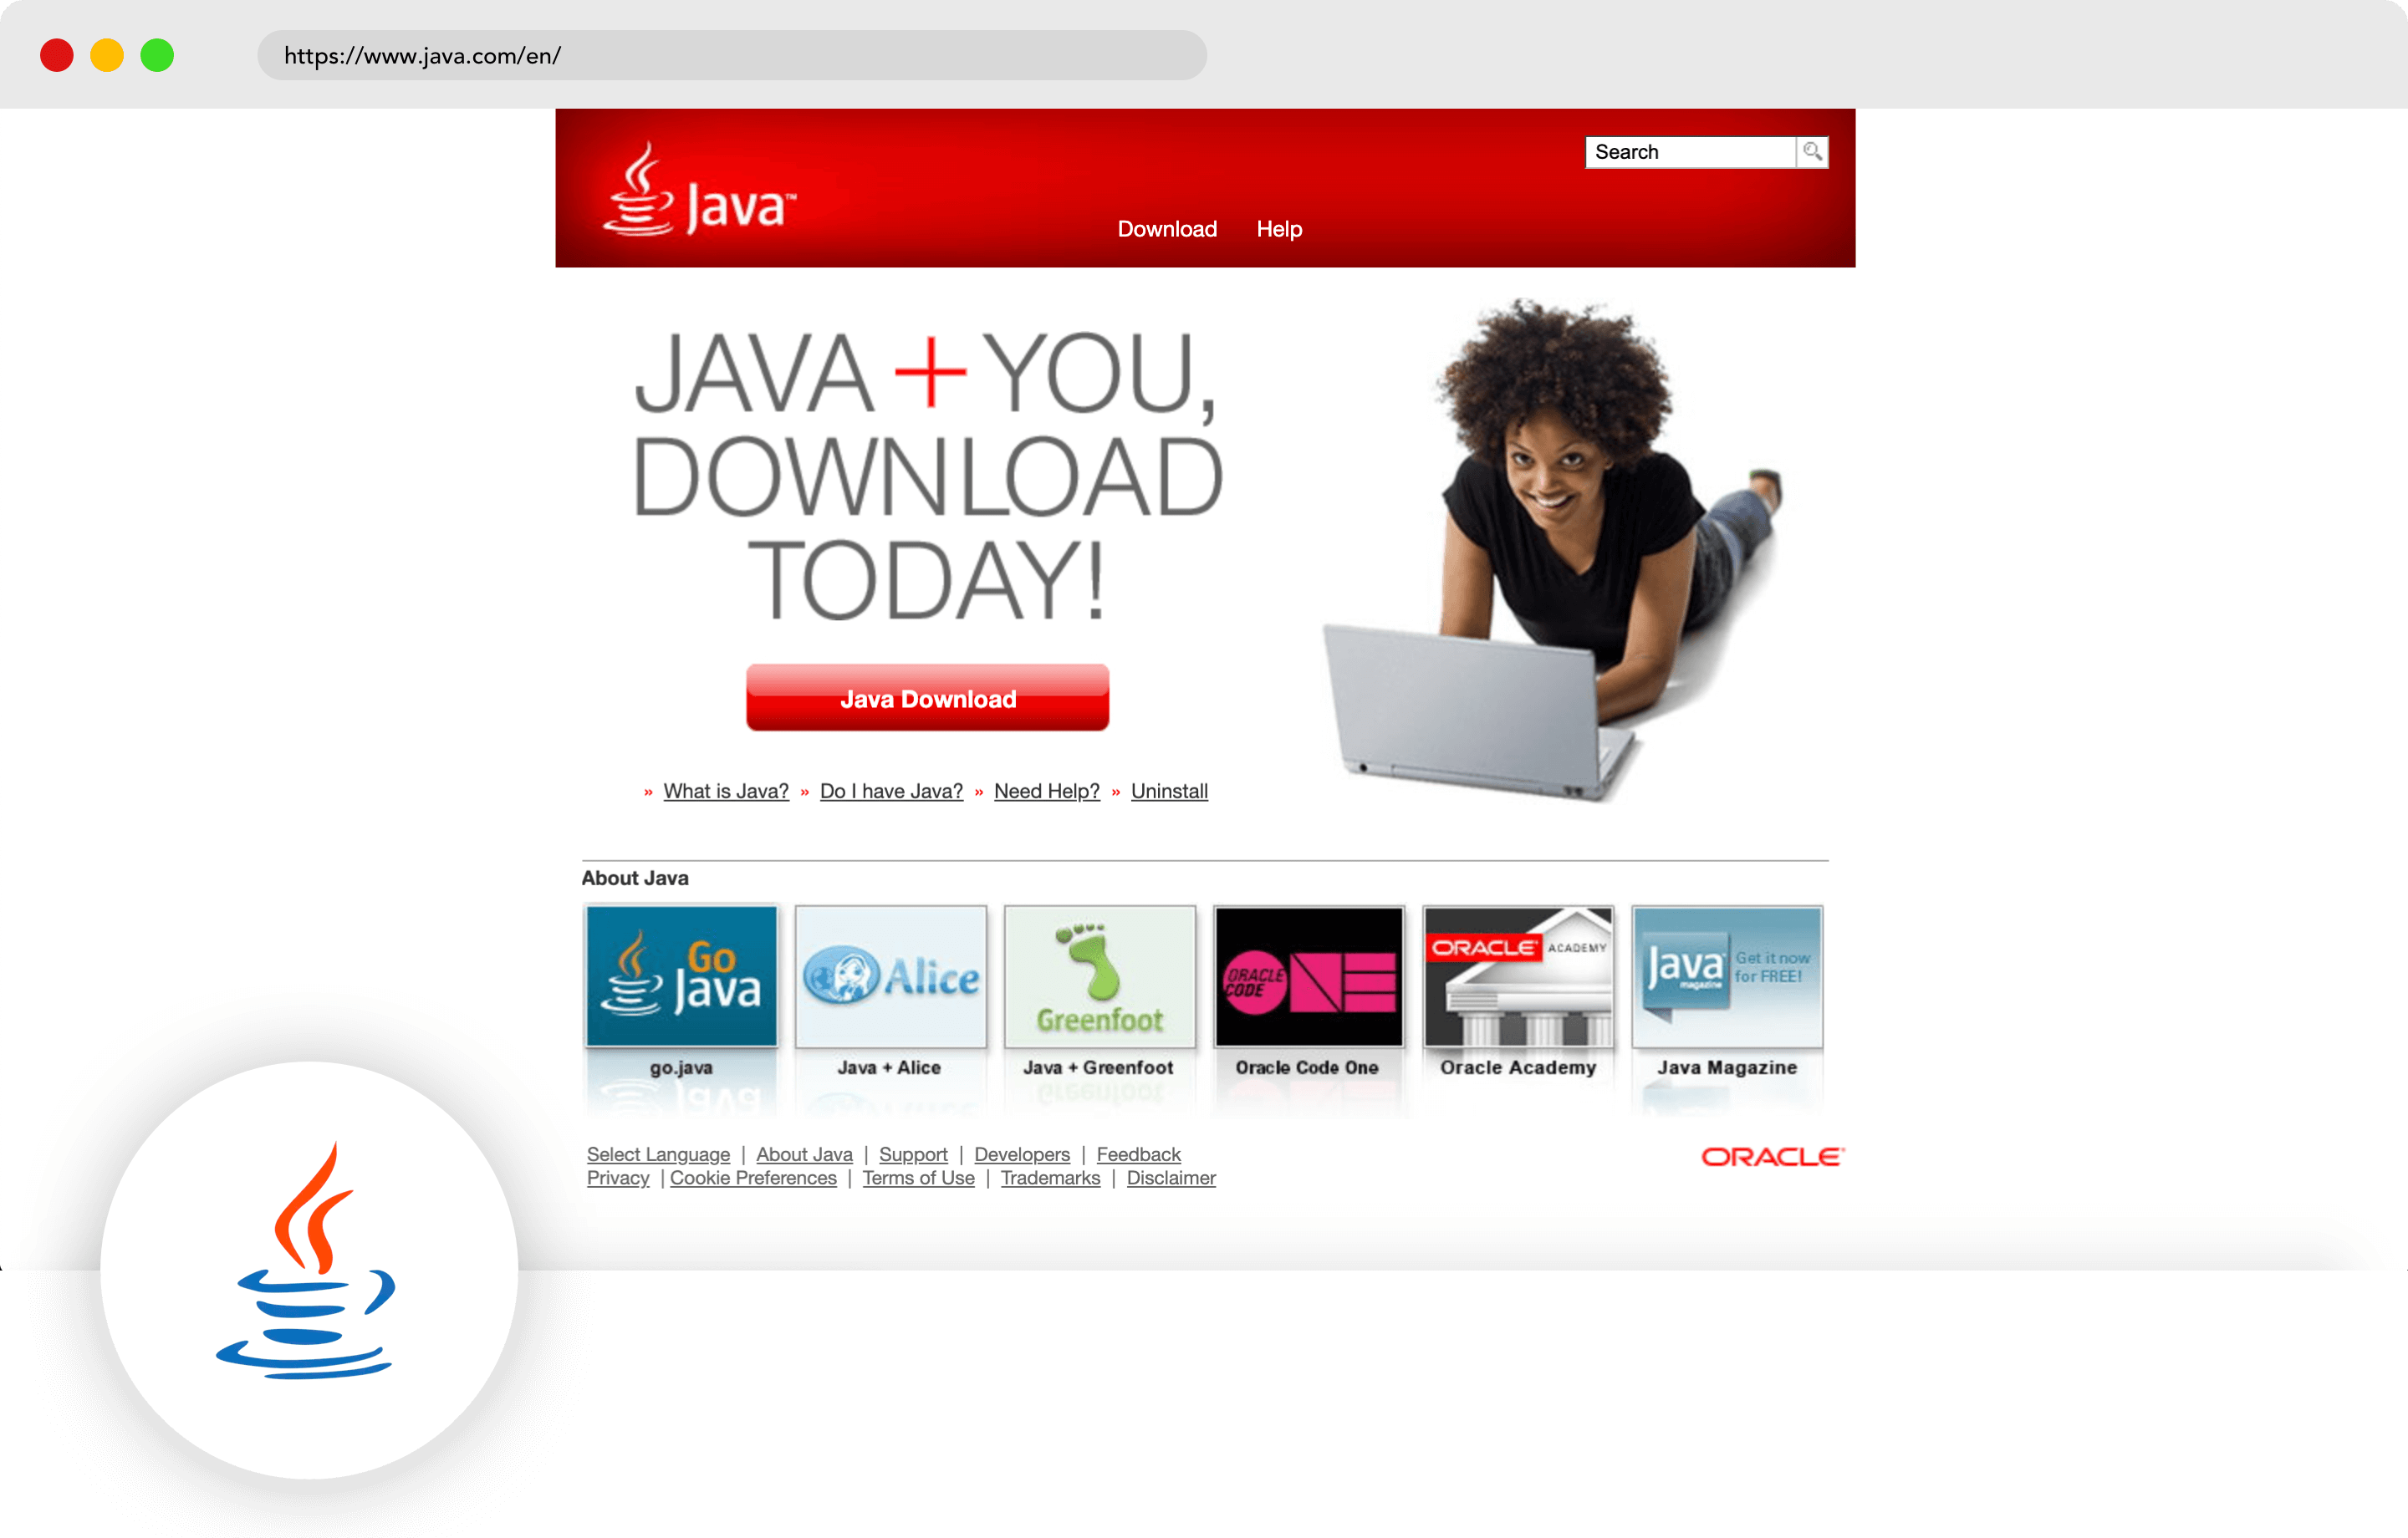 Java mobile programming language